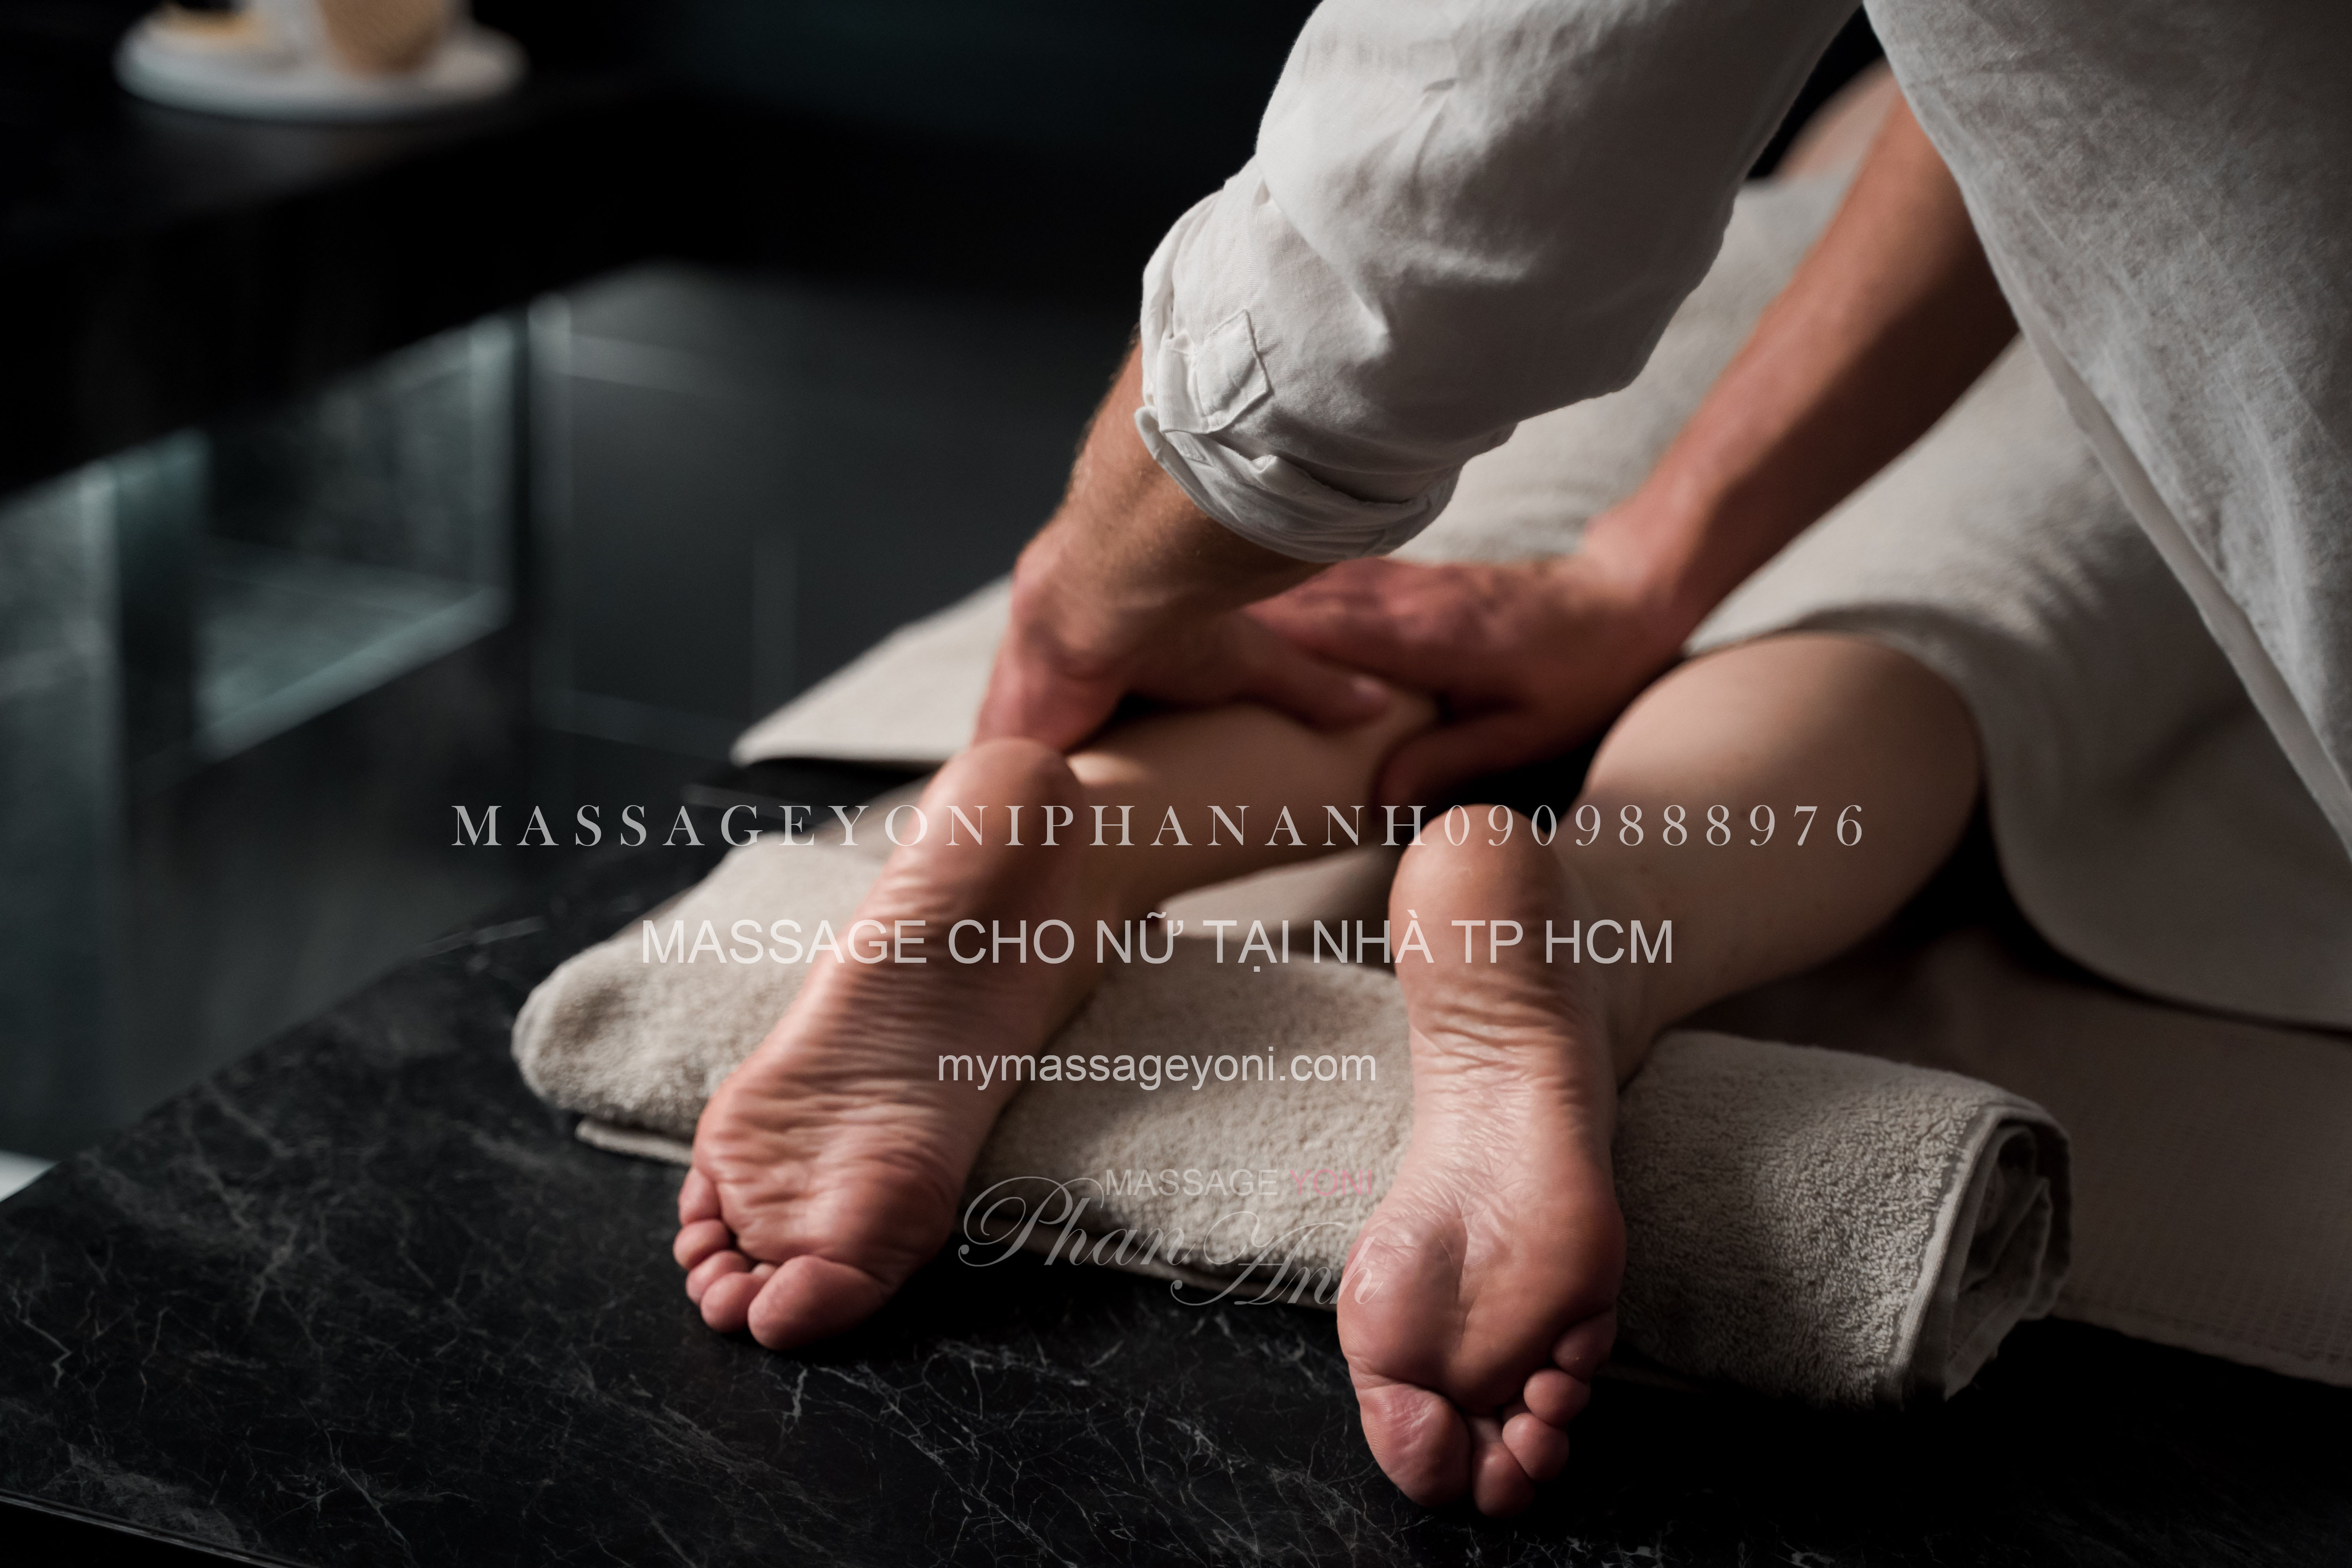 massage yoni cho nữ tại nhà tp hcm